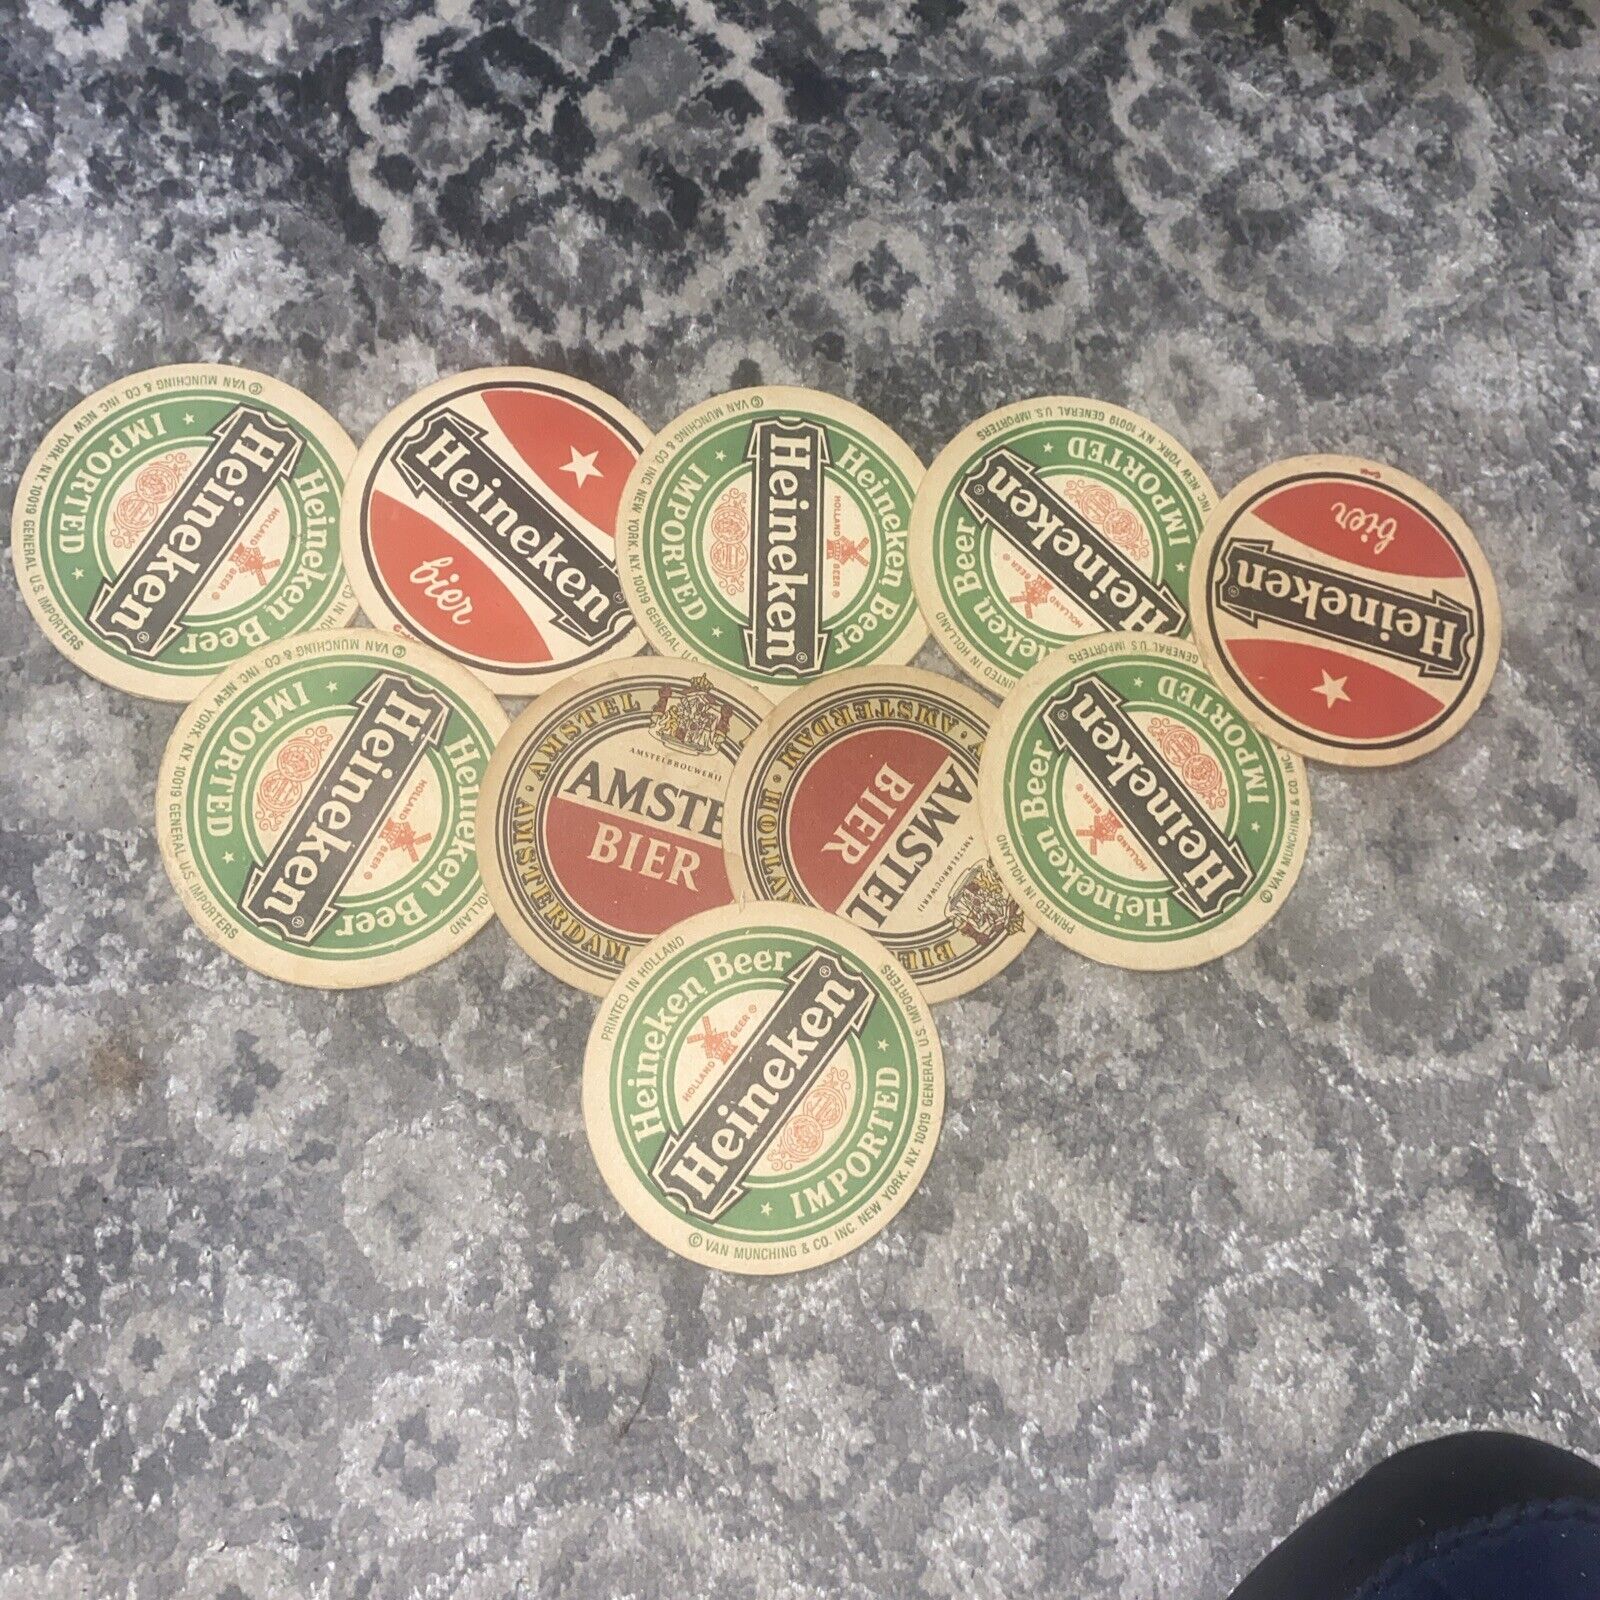 Lot of 10 Vintage Heineken Beer Coasters, Printed In Holland, Double Sided NOS